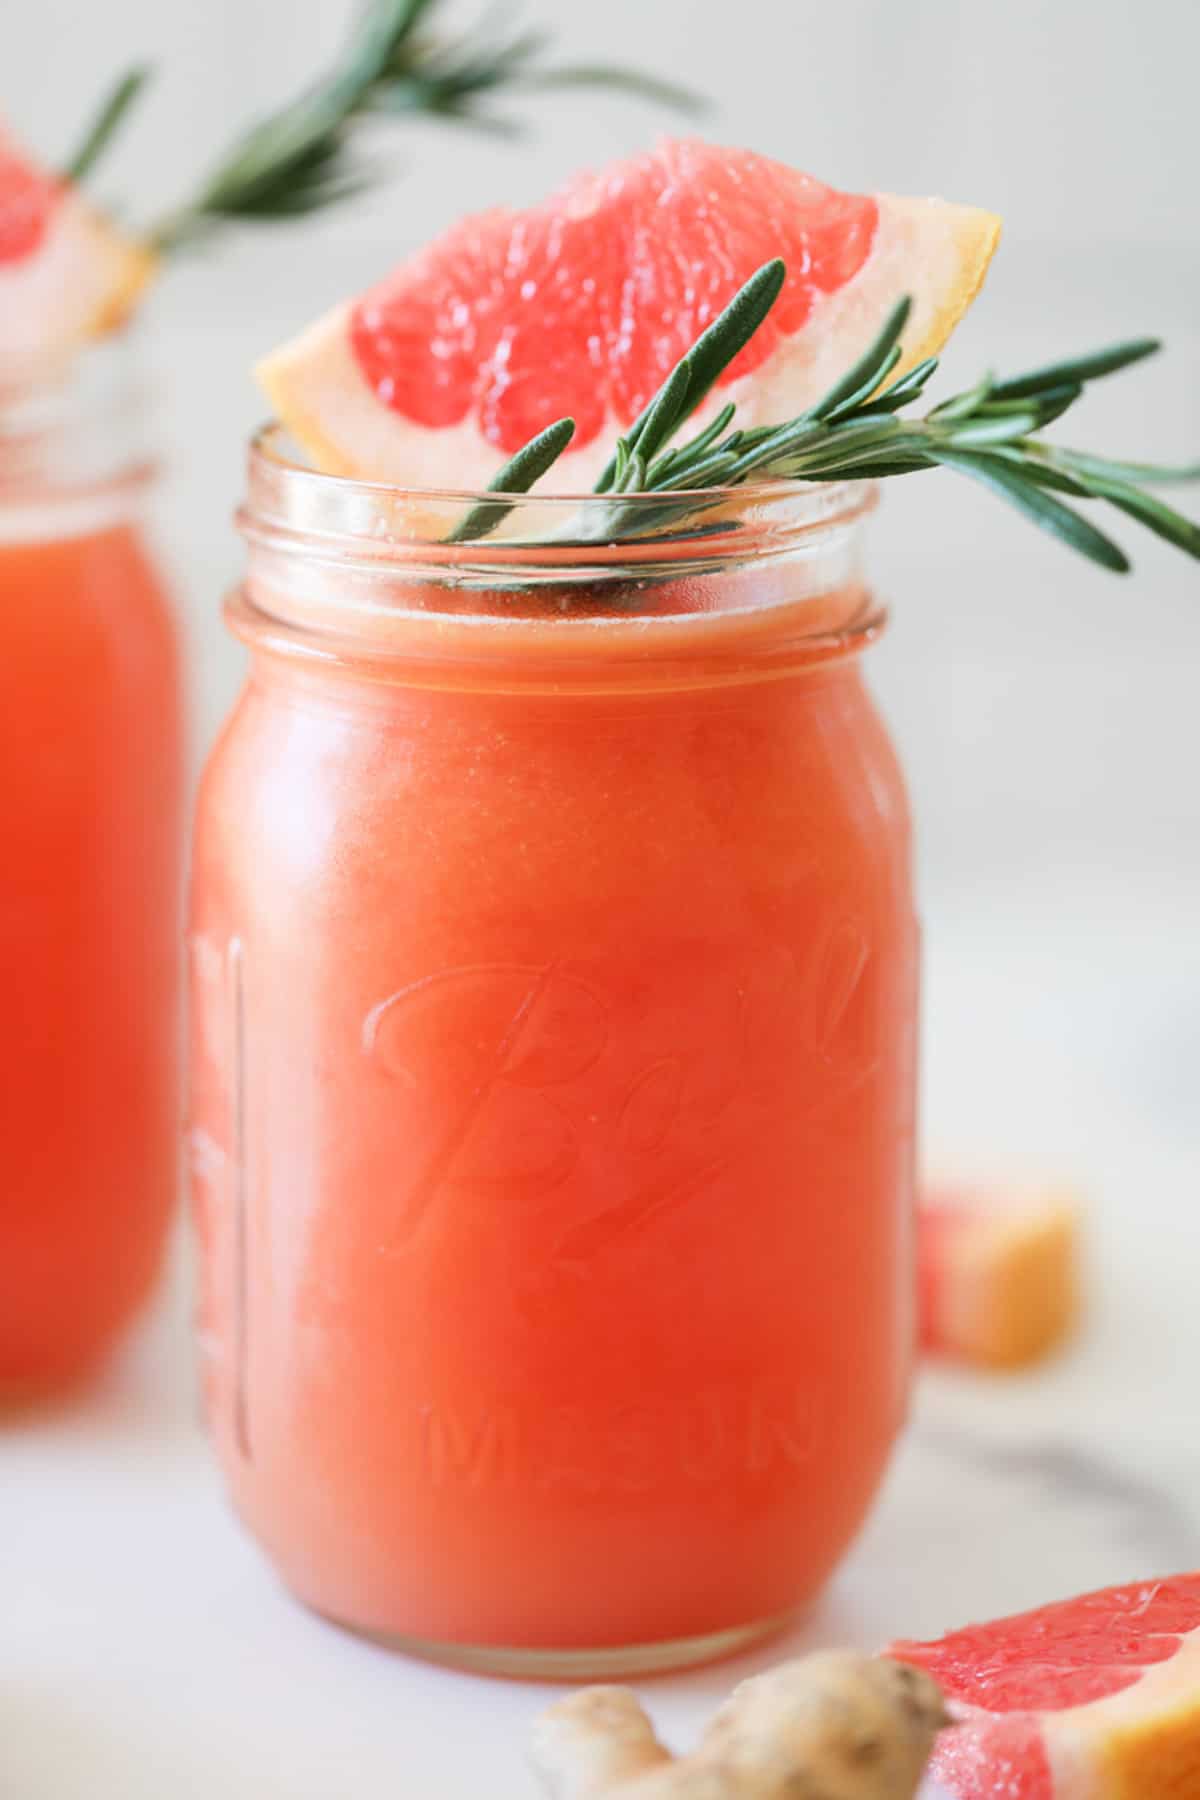 5 Best Orange Juicer For Healthy & Tasty Citrus Delights At Home